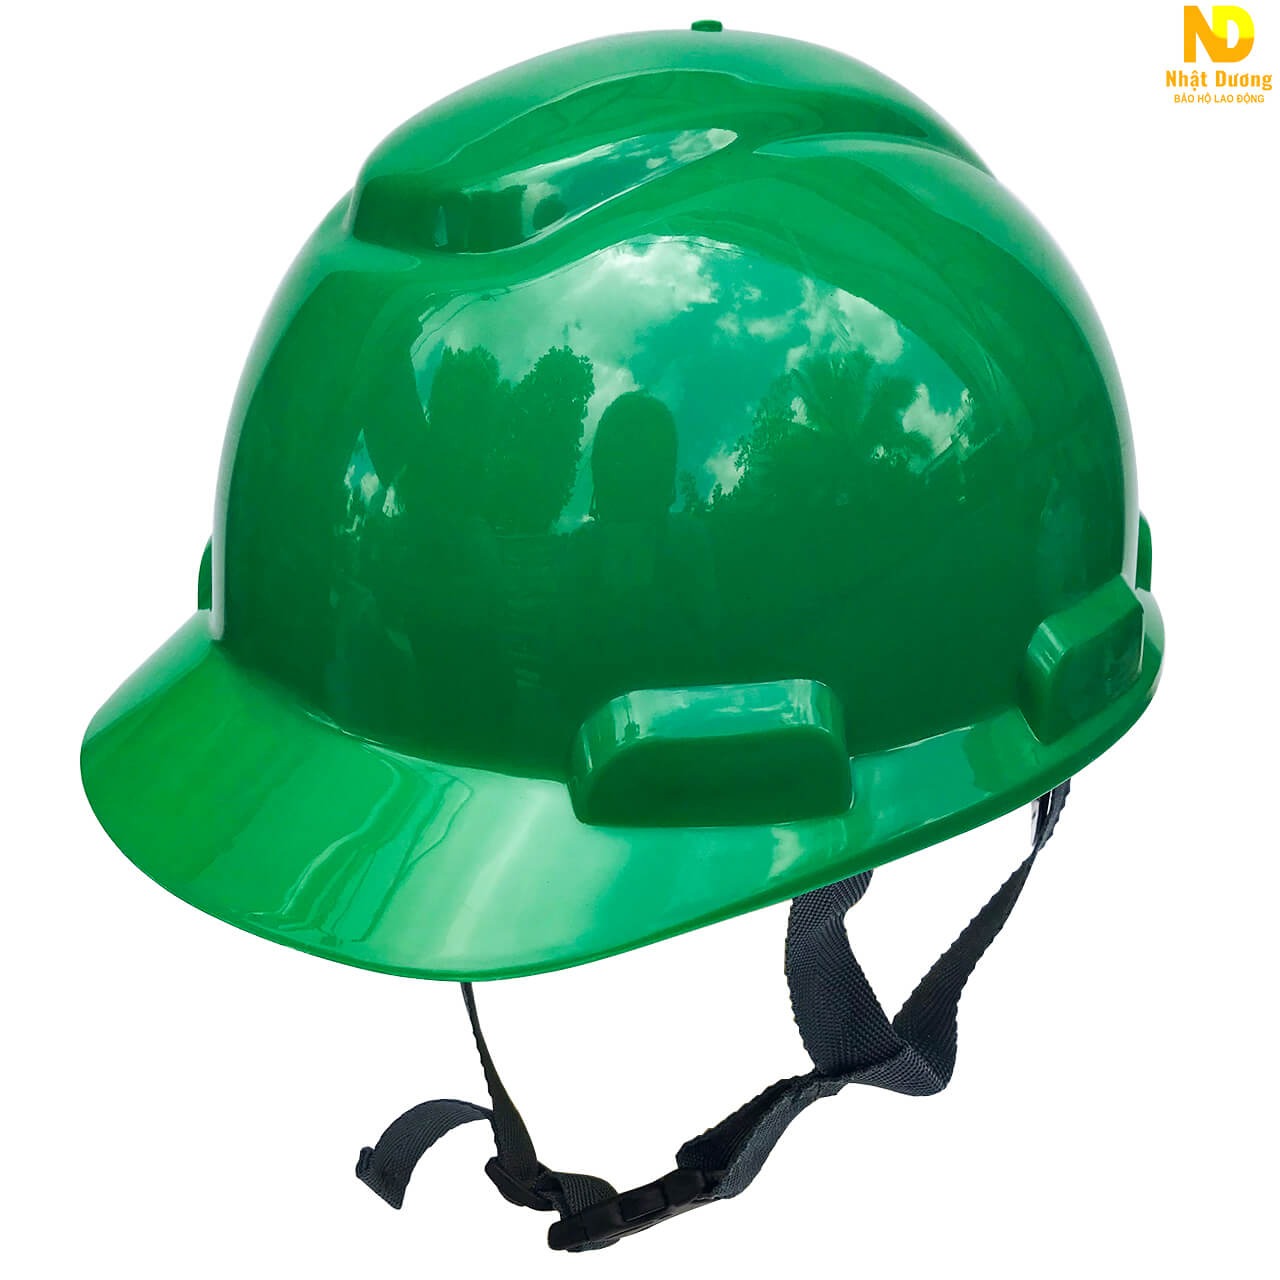 Mũ bảo hộ công trình HP-N.08 màu xanh lá cây